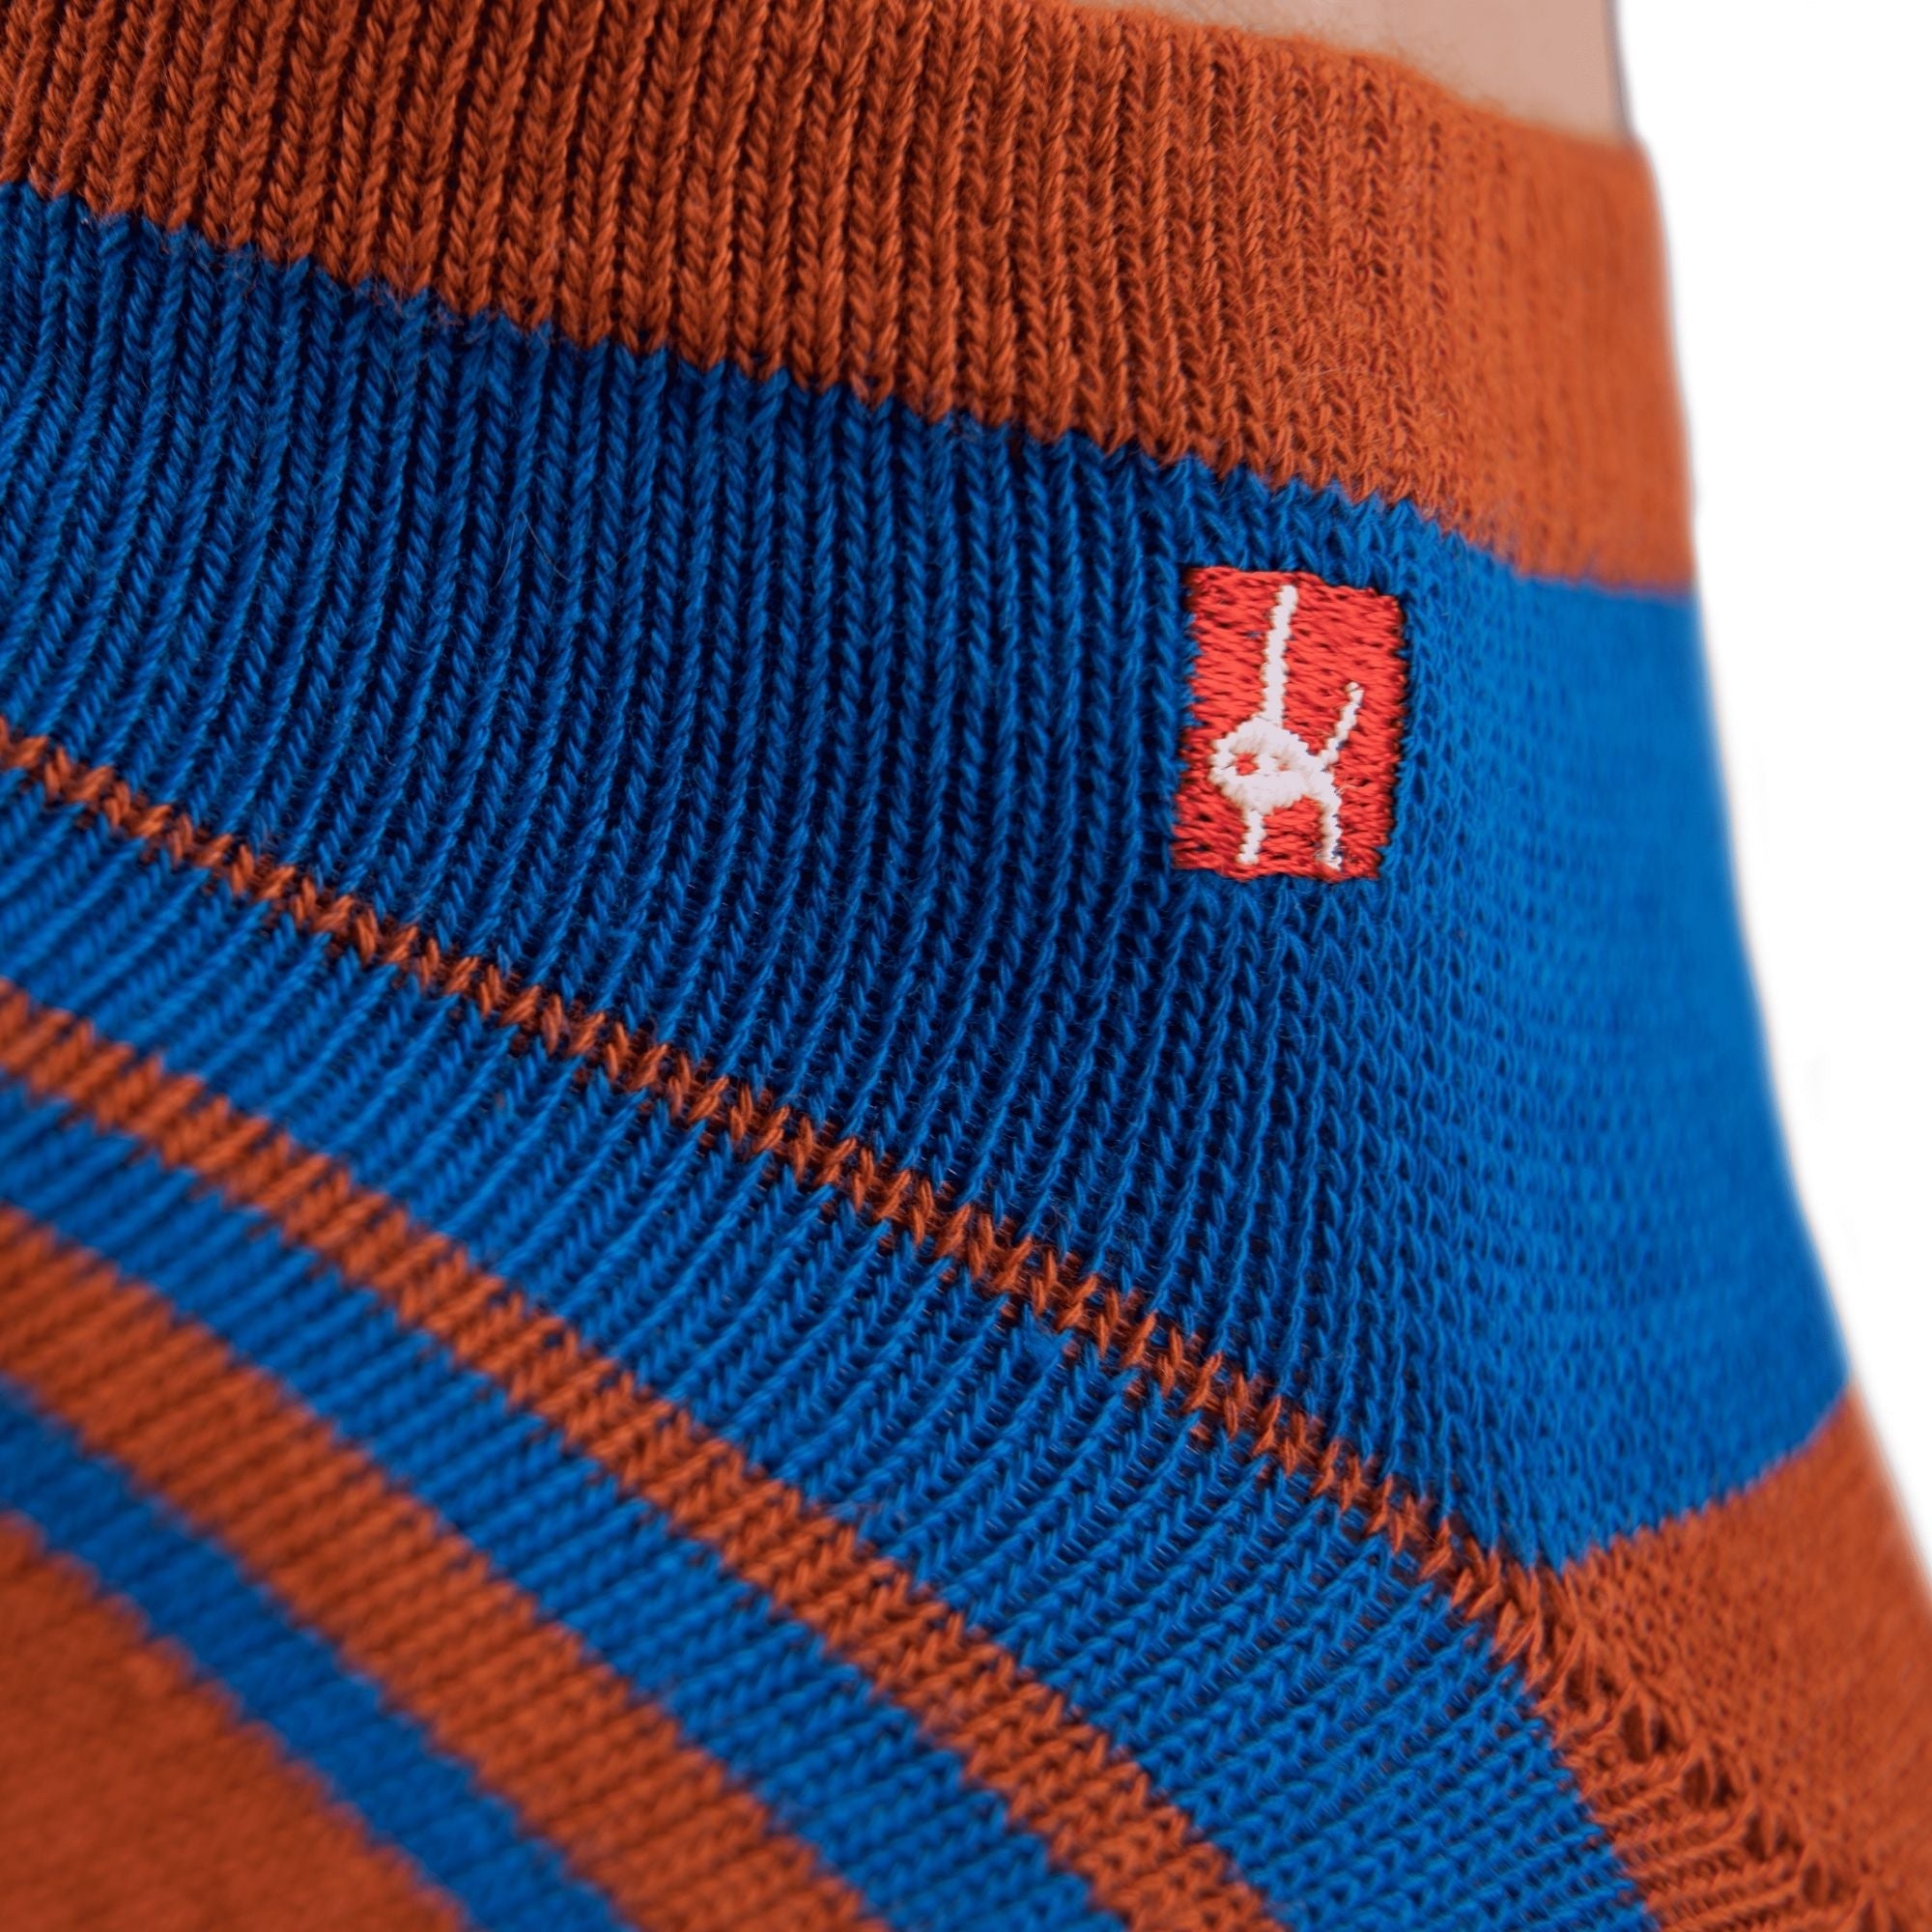 Knitido Track & Trail Spins barfods ankle tåsokker til kvinder og mænd i farven orange/blue, detalje